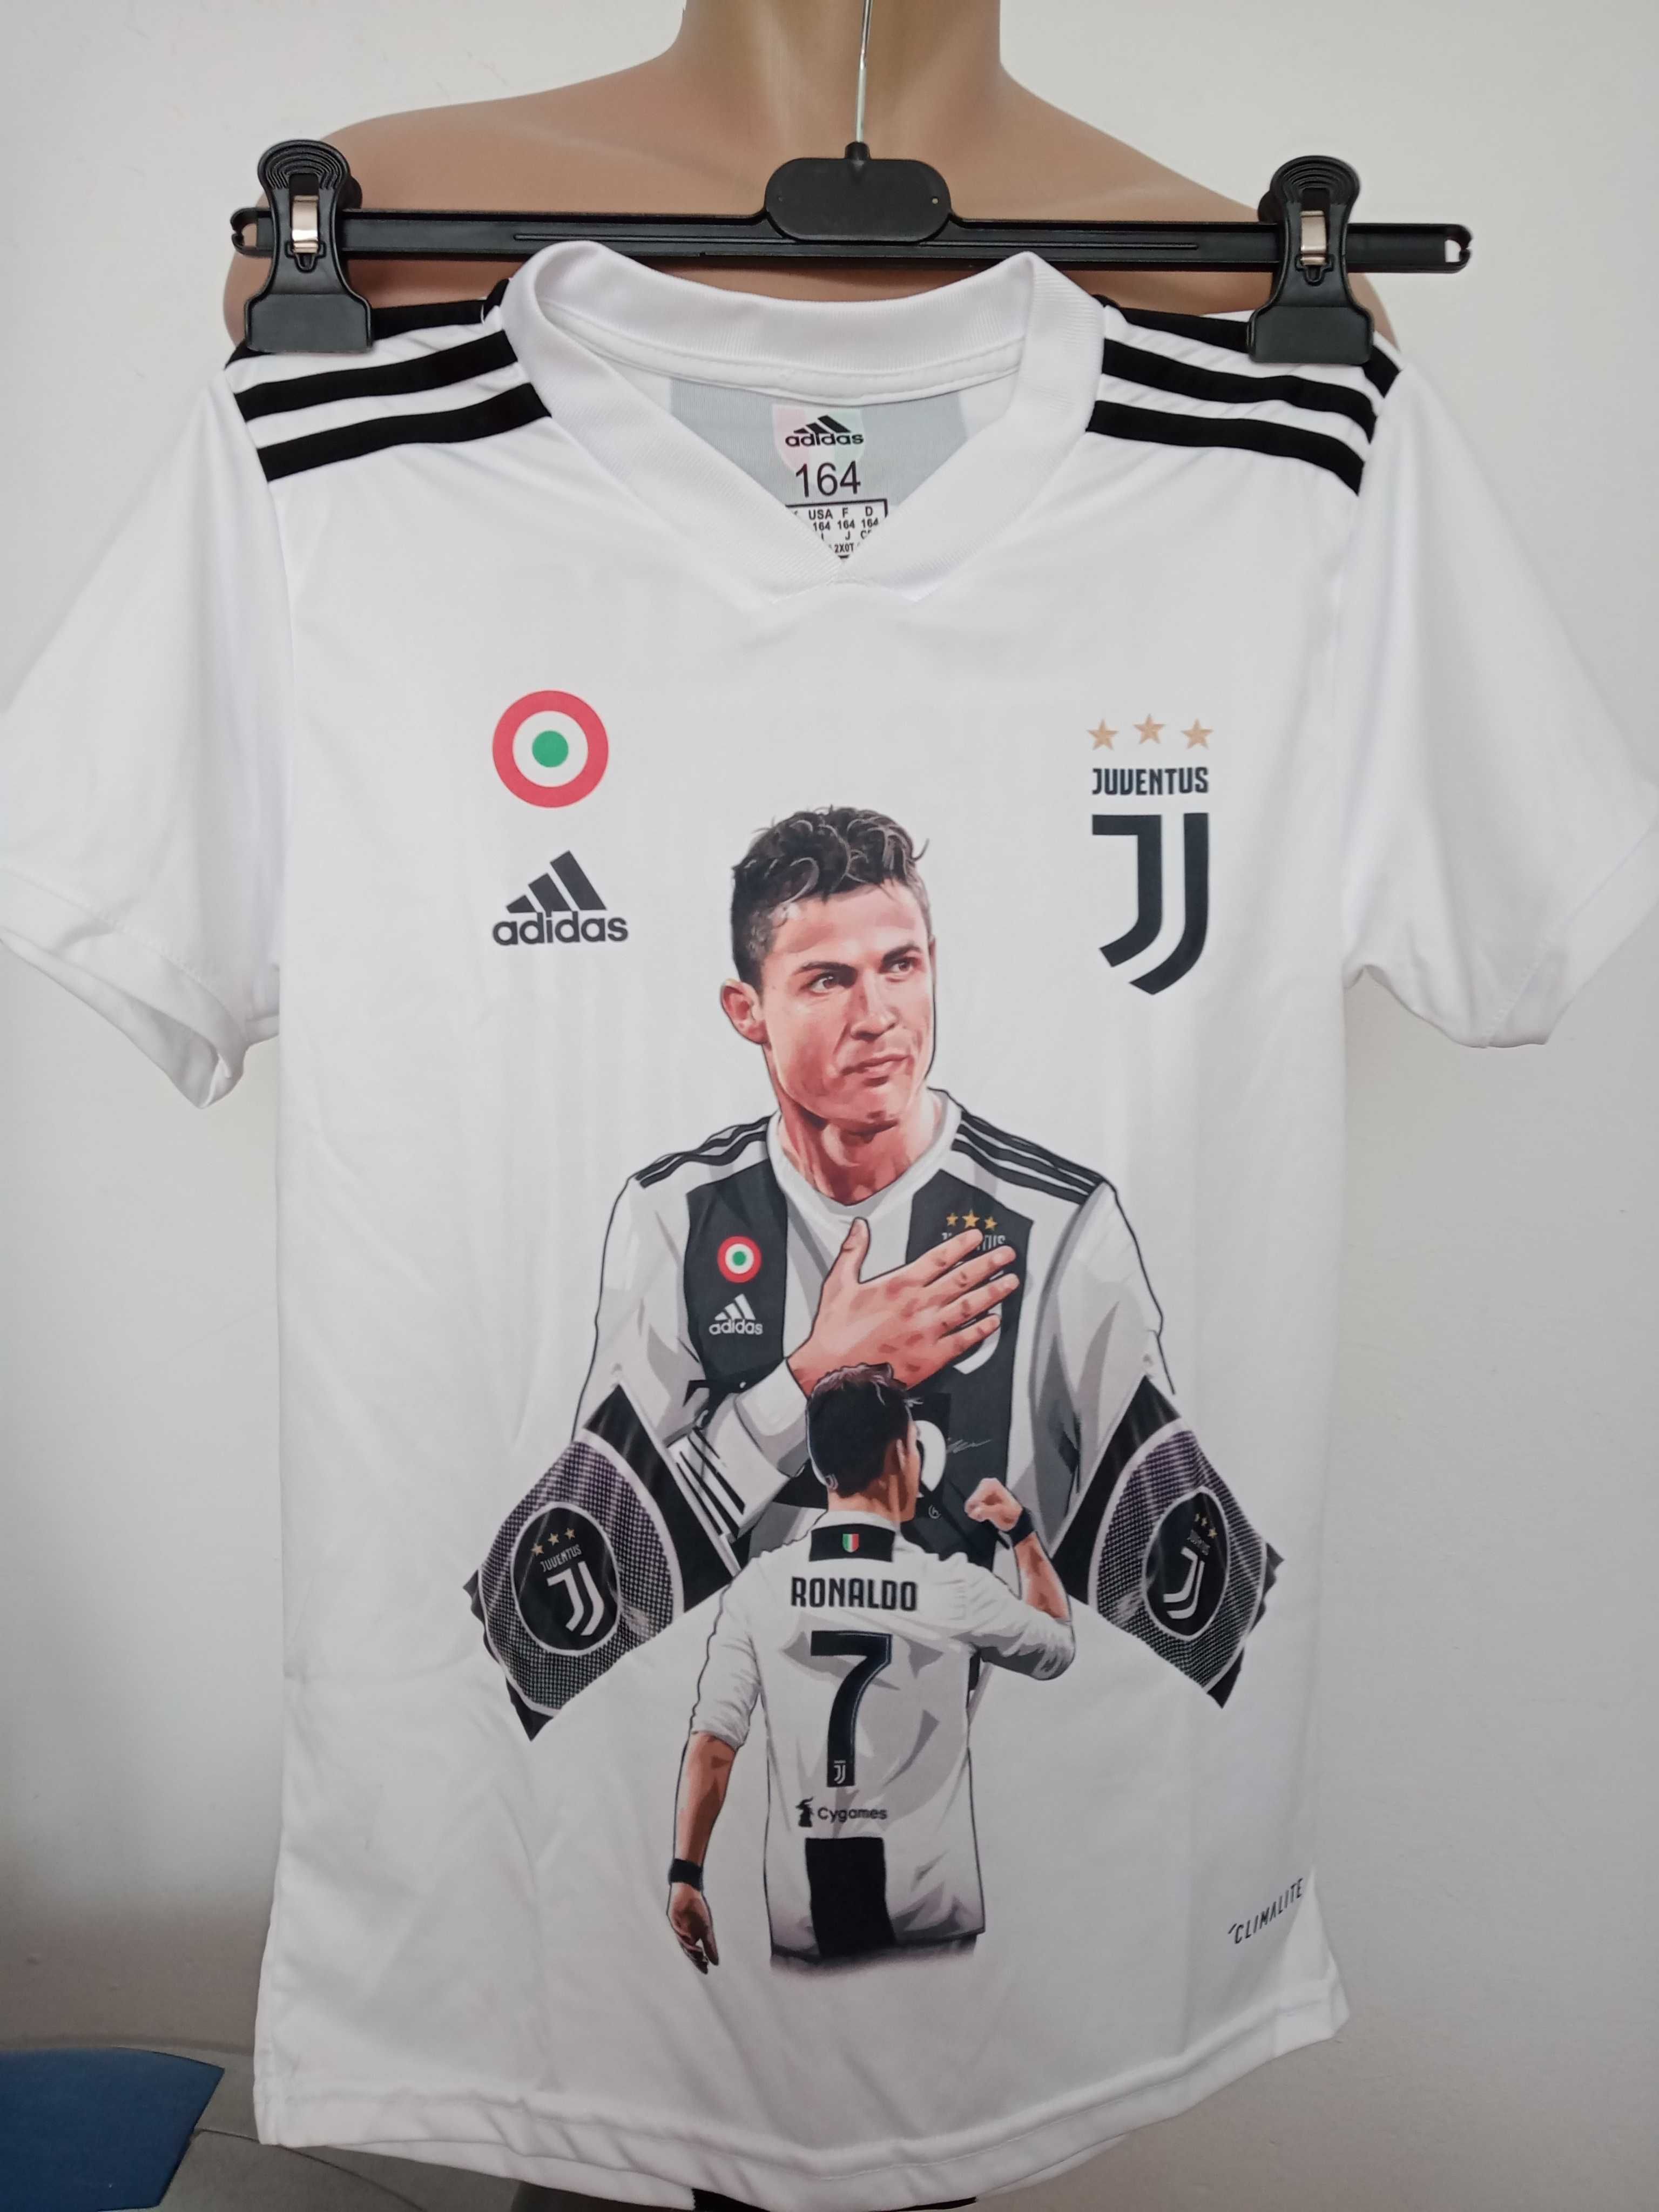 Tricouri Cristiano Ronaldo Real Madrid, Juventus Torino